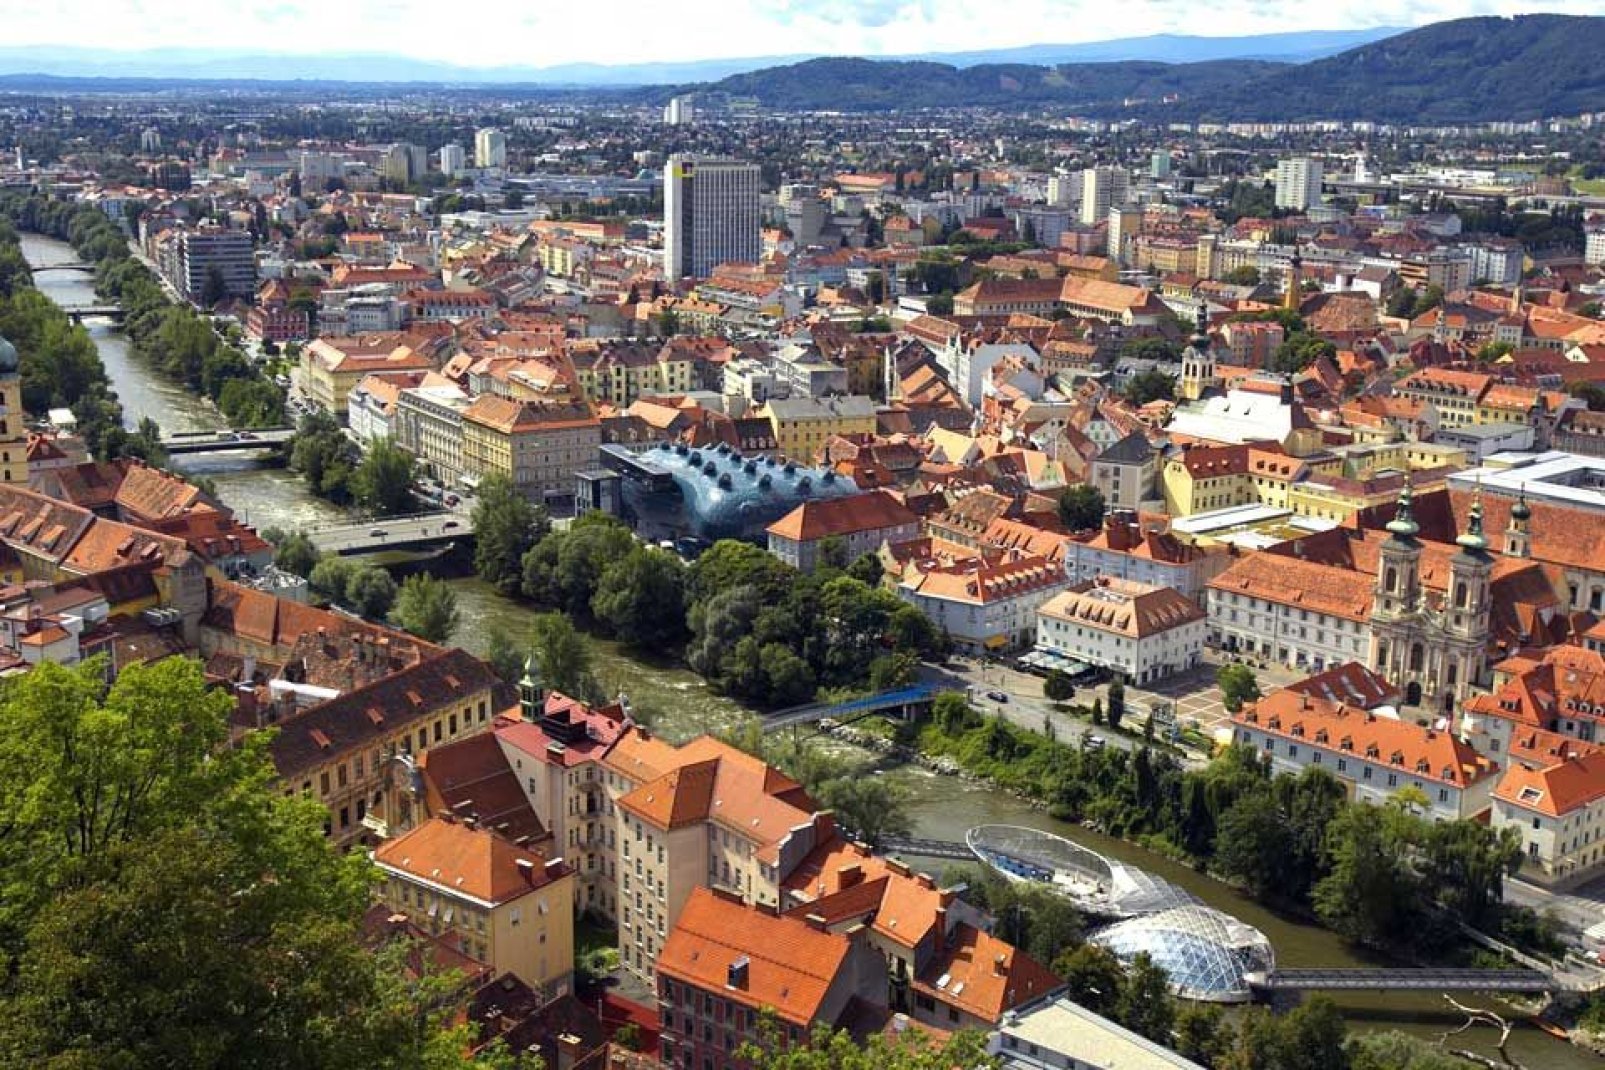 Graz ist mit 250.000 Einwohnern die zweitgrößte Stadt Österreichs. Sie liegt im südöstlichen Teil des Landes und wird von der Mur durchquert.